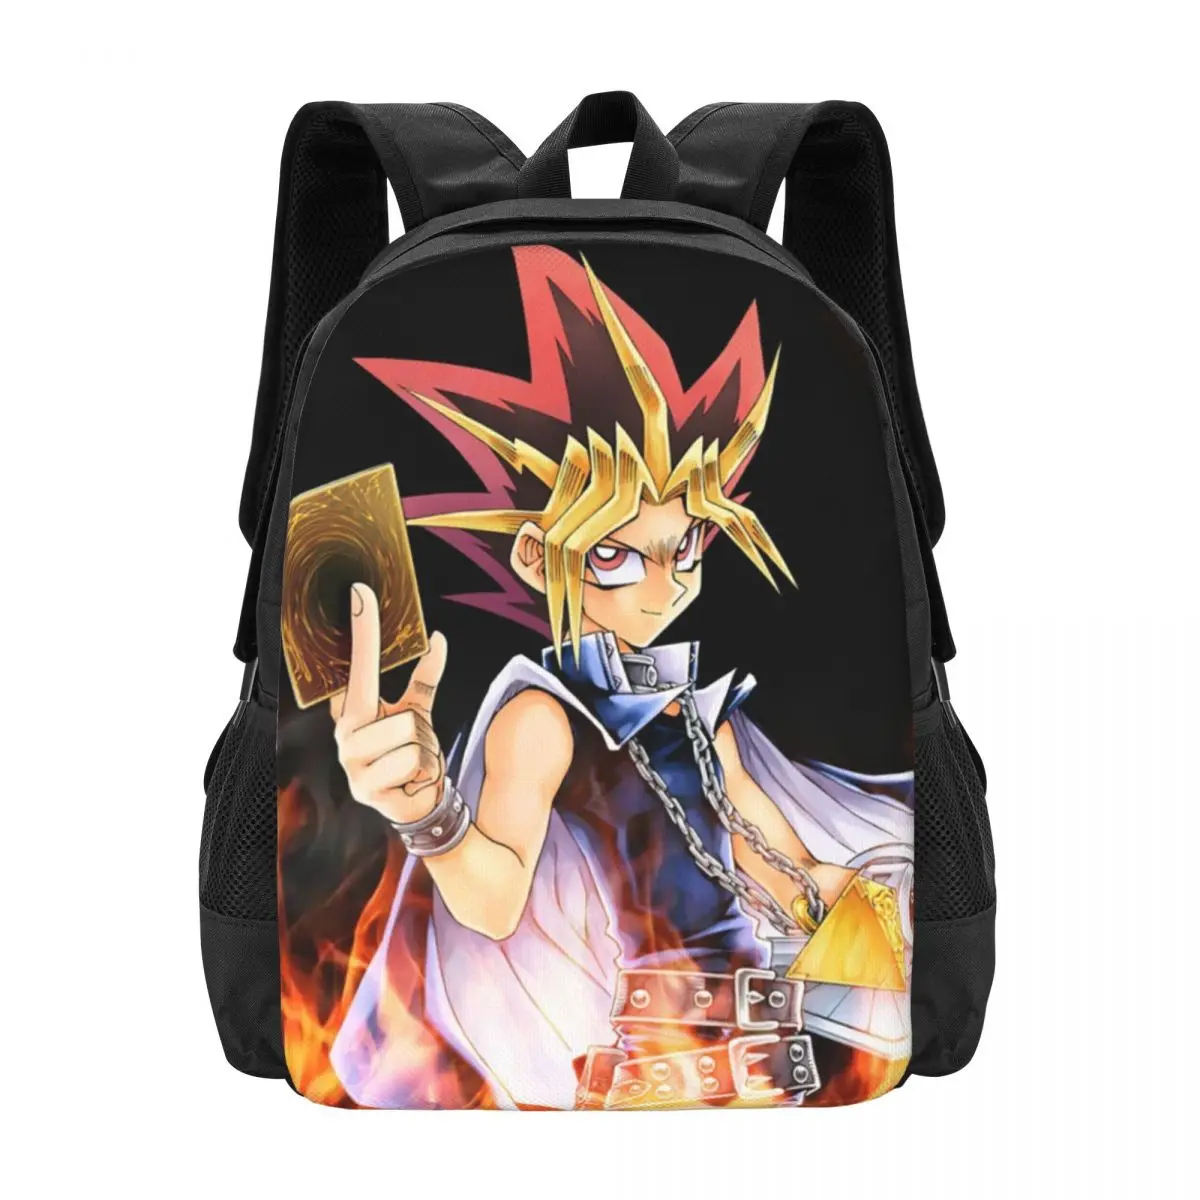 Yugioh Backpack for Girls Boys Travel RucksackBackpacks for Teenage school bag